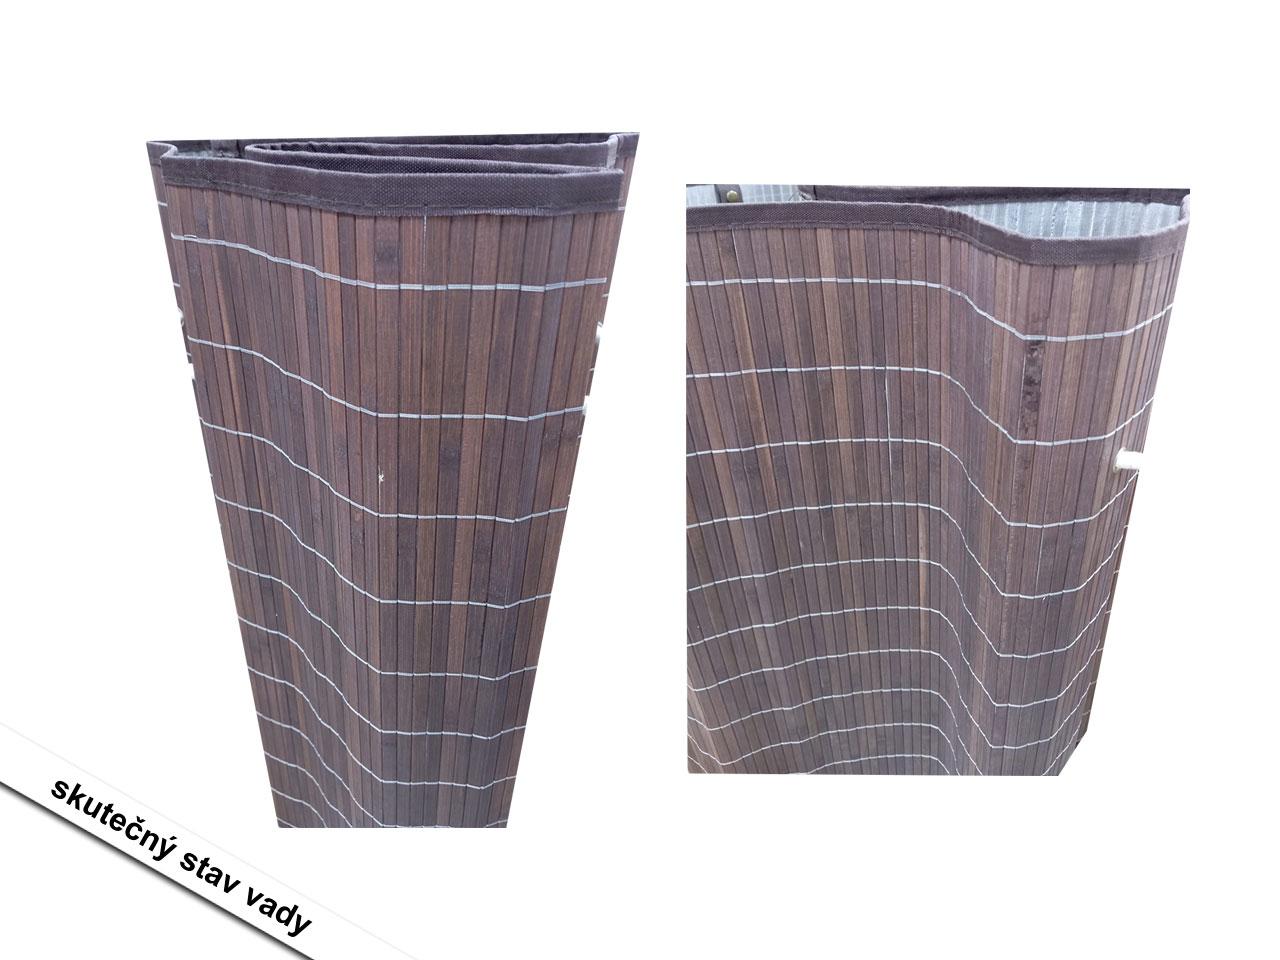 Prádelní koš 850-144BN, box na prádlo, s pratelným pytlem, vyjímatelný, bambusový, hnědý 